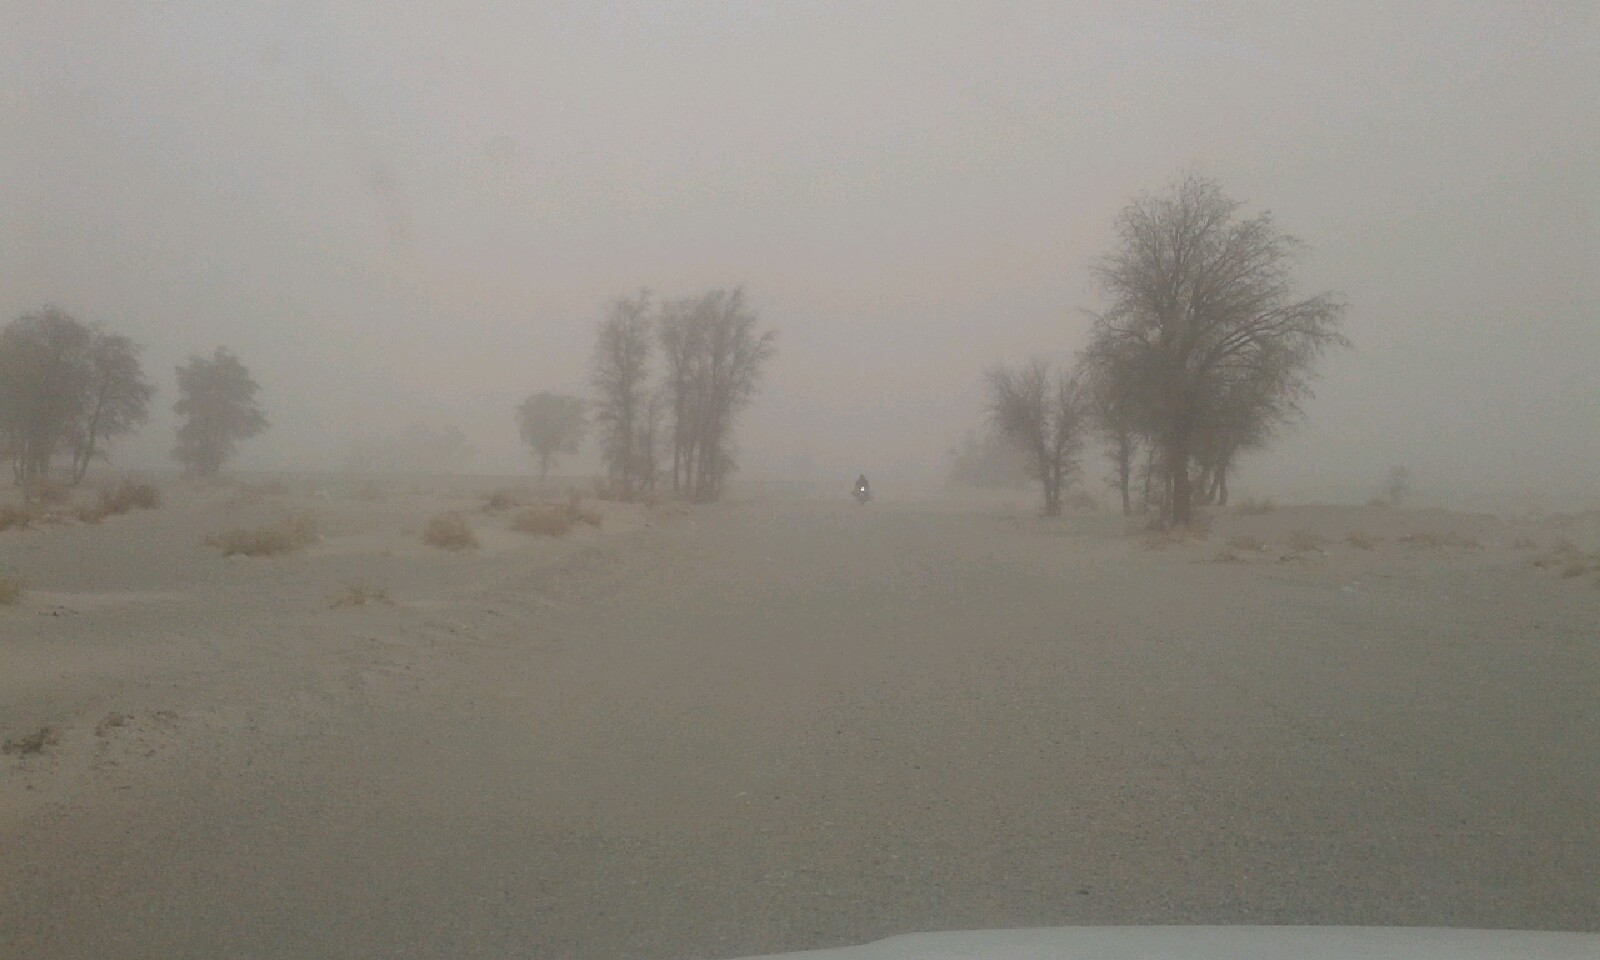 ۲۰ روستا ریگان در محاصره گرد و غبار شدید قرار دارند